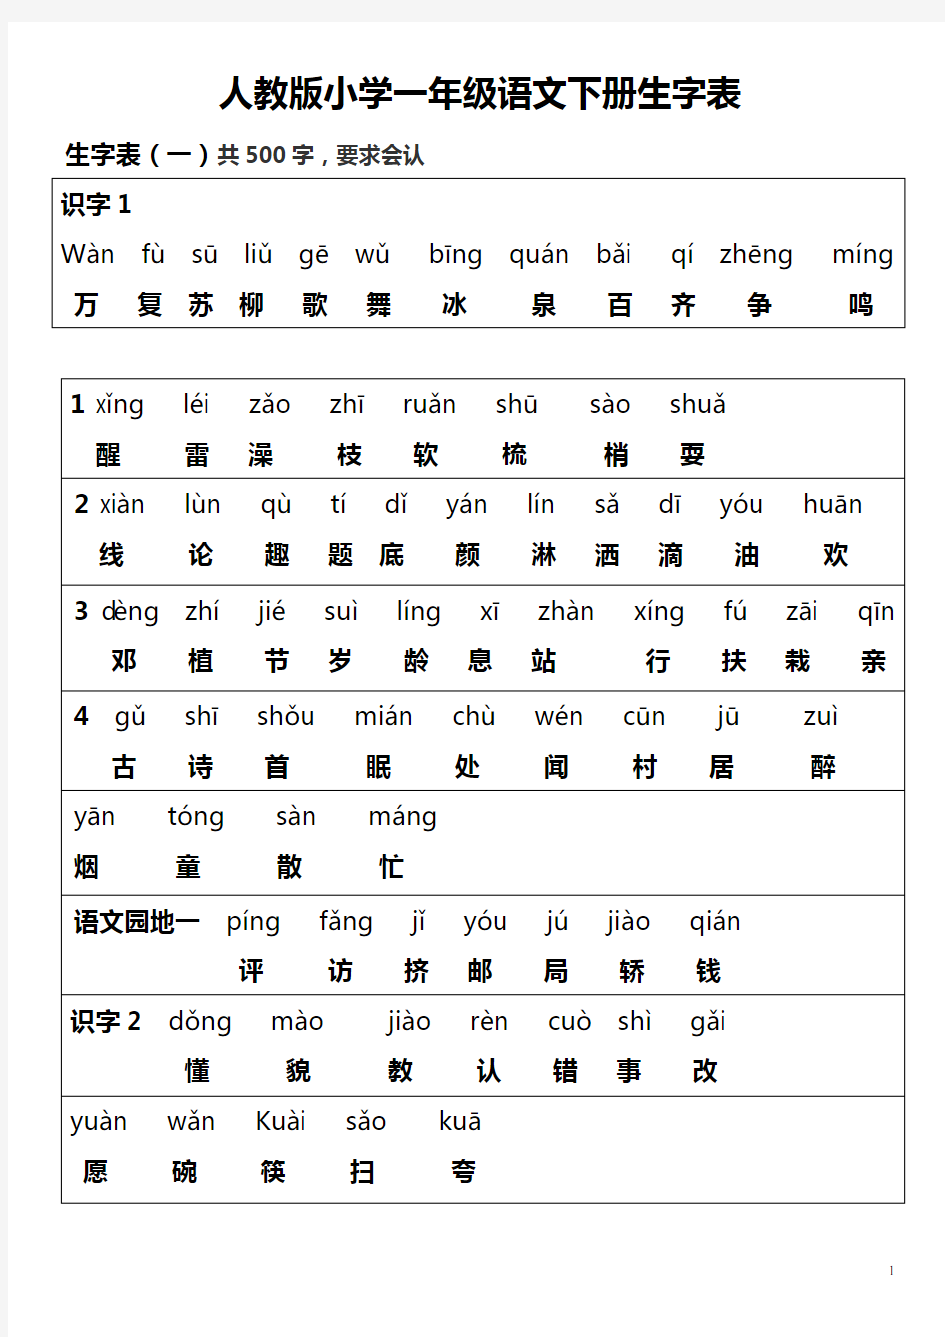 人教版一年级语文下册(所有生字表带拼音和汉字)